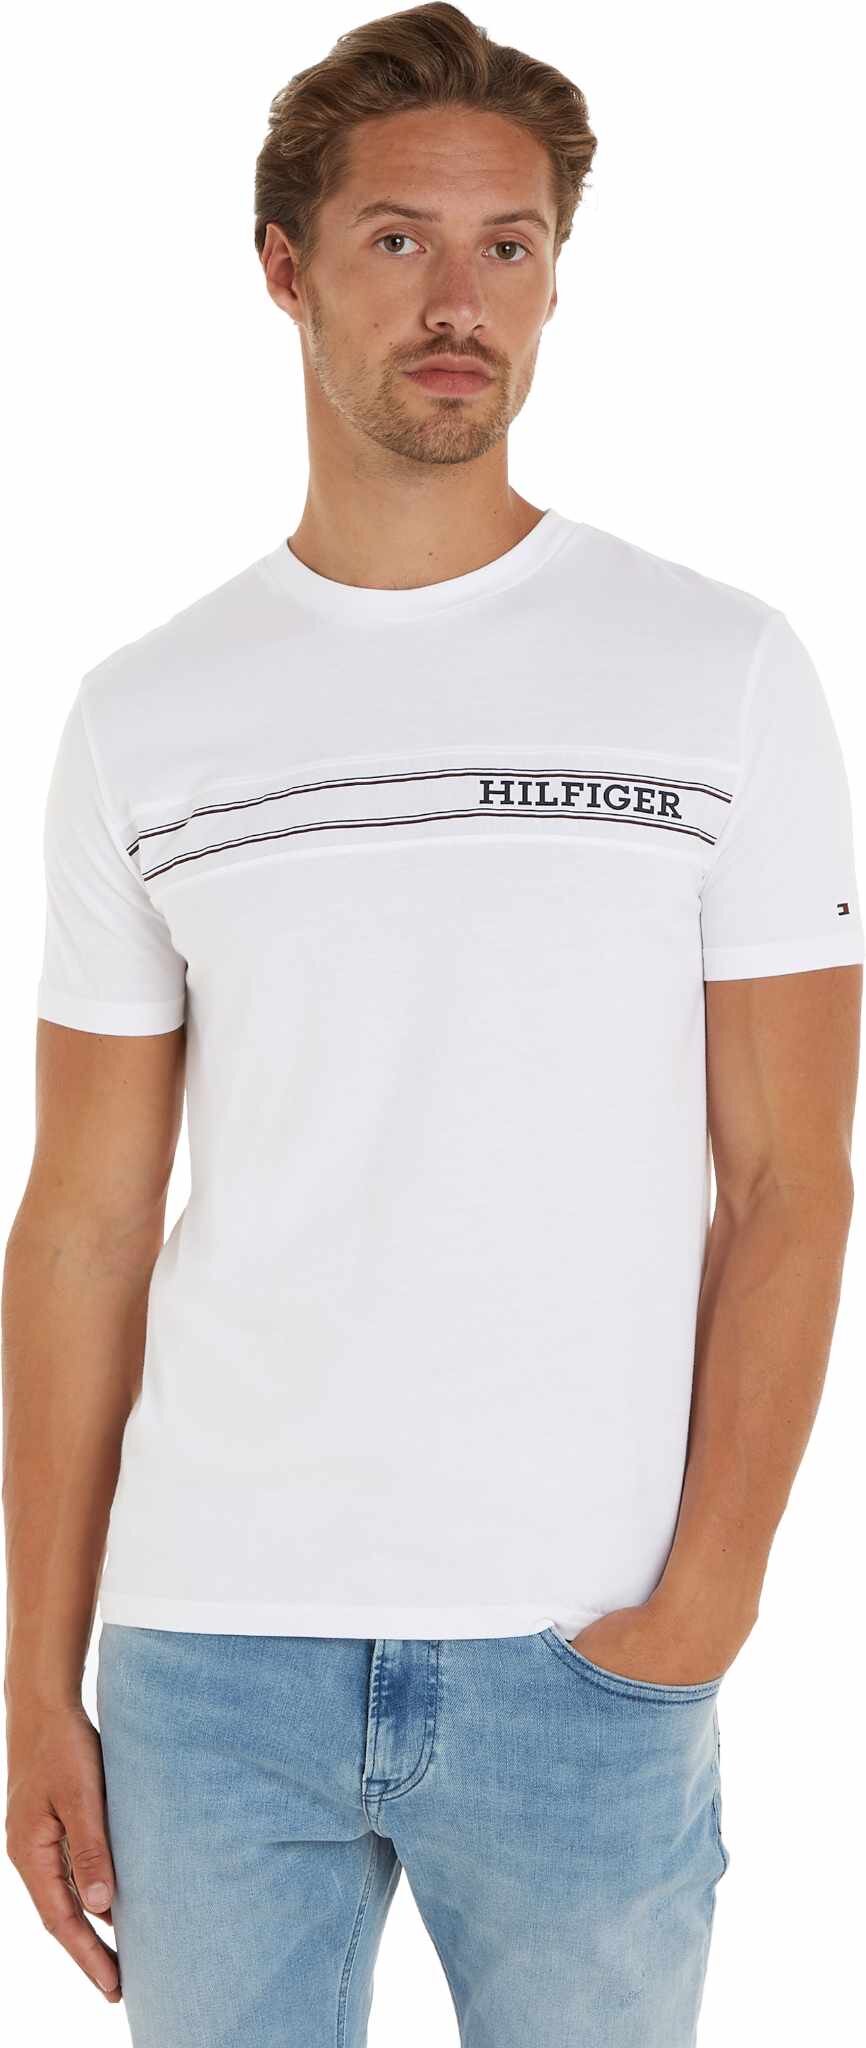 TOMMY HILFIGER tričko biele  UMOUM03196  YBR